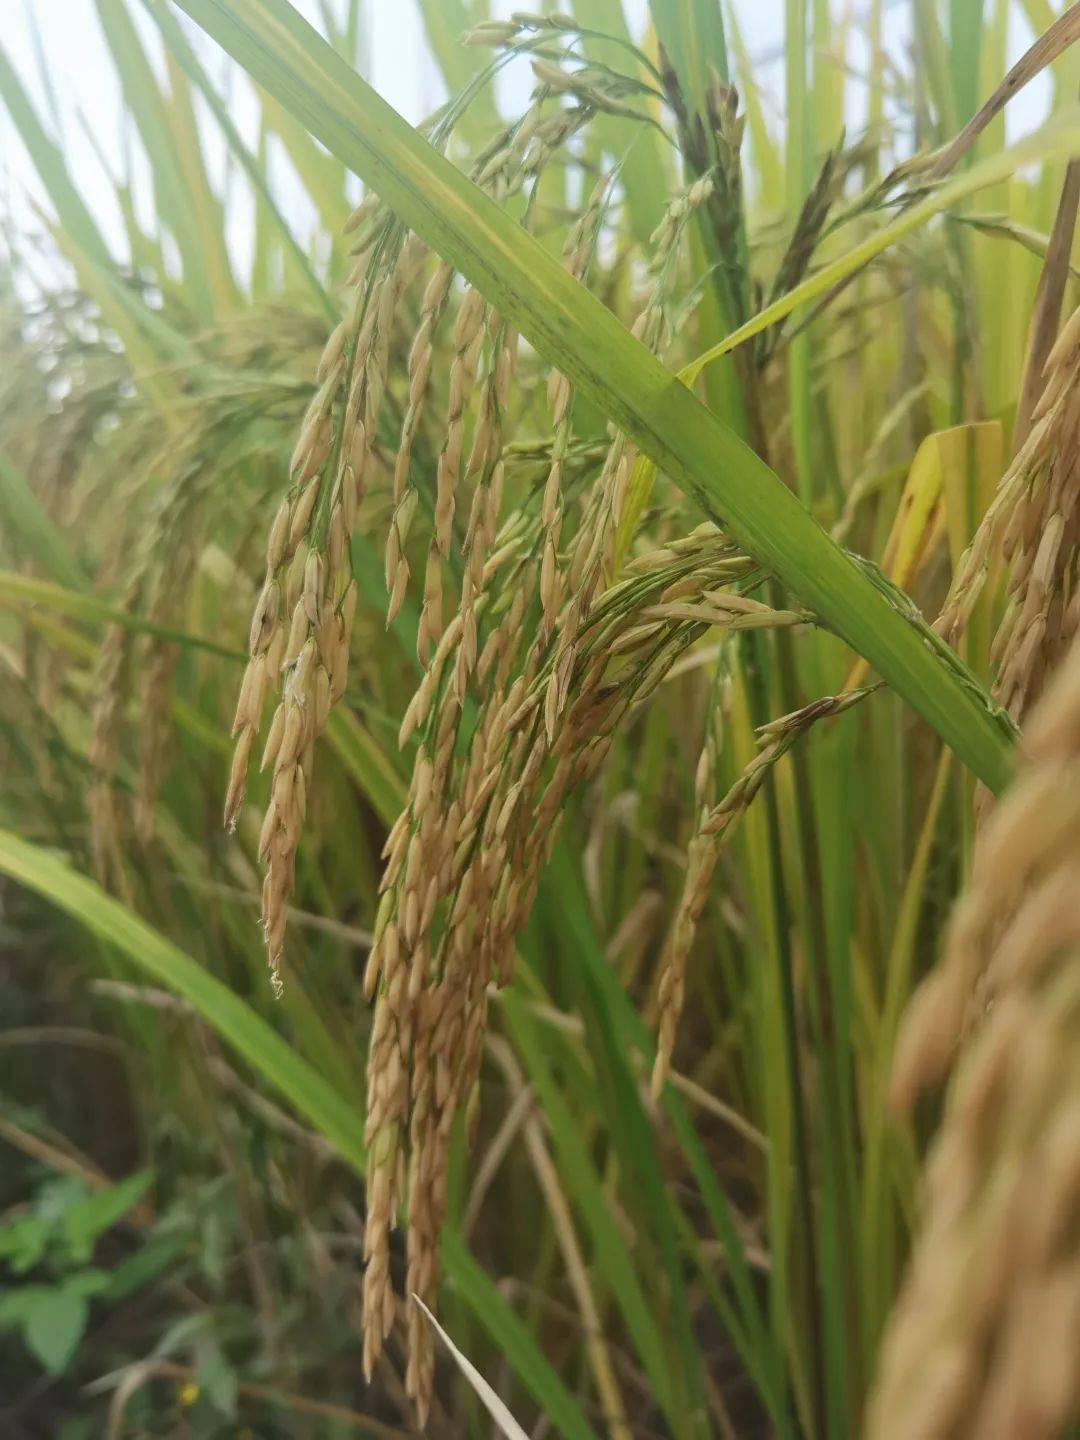 谷丰丝苗水稻品种简介图片